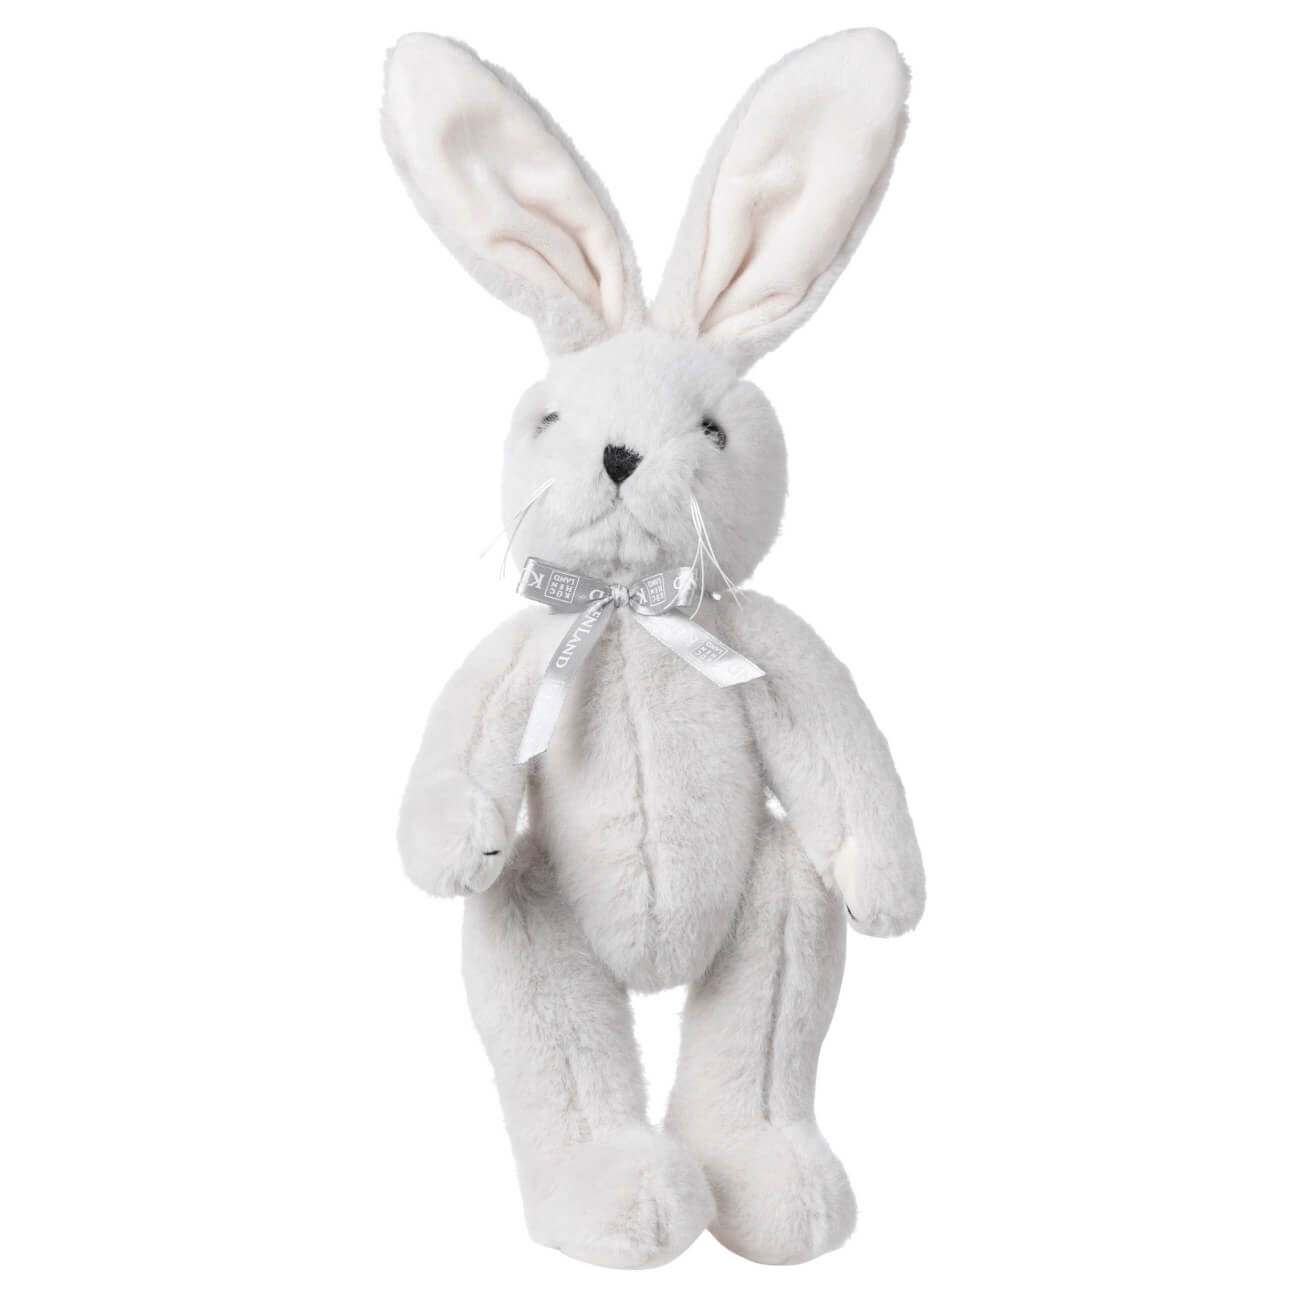 Игрушка, 30 см, мягкая, с подвижными лапами, полиэстер, светло-серая, Кролик, Rabbit toy мягкая игрушка котик в костюме дракона 90 см